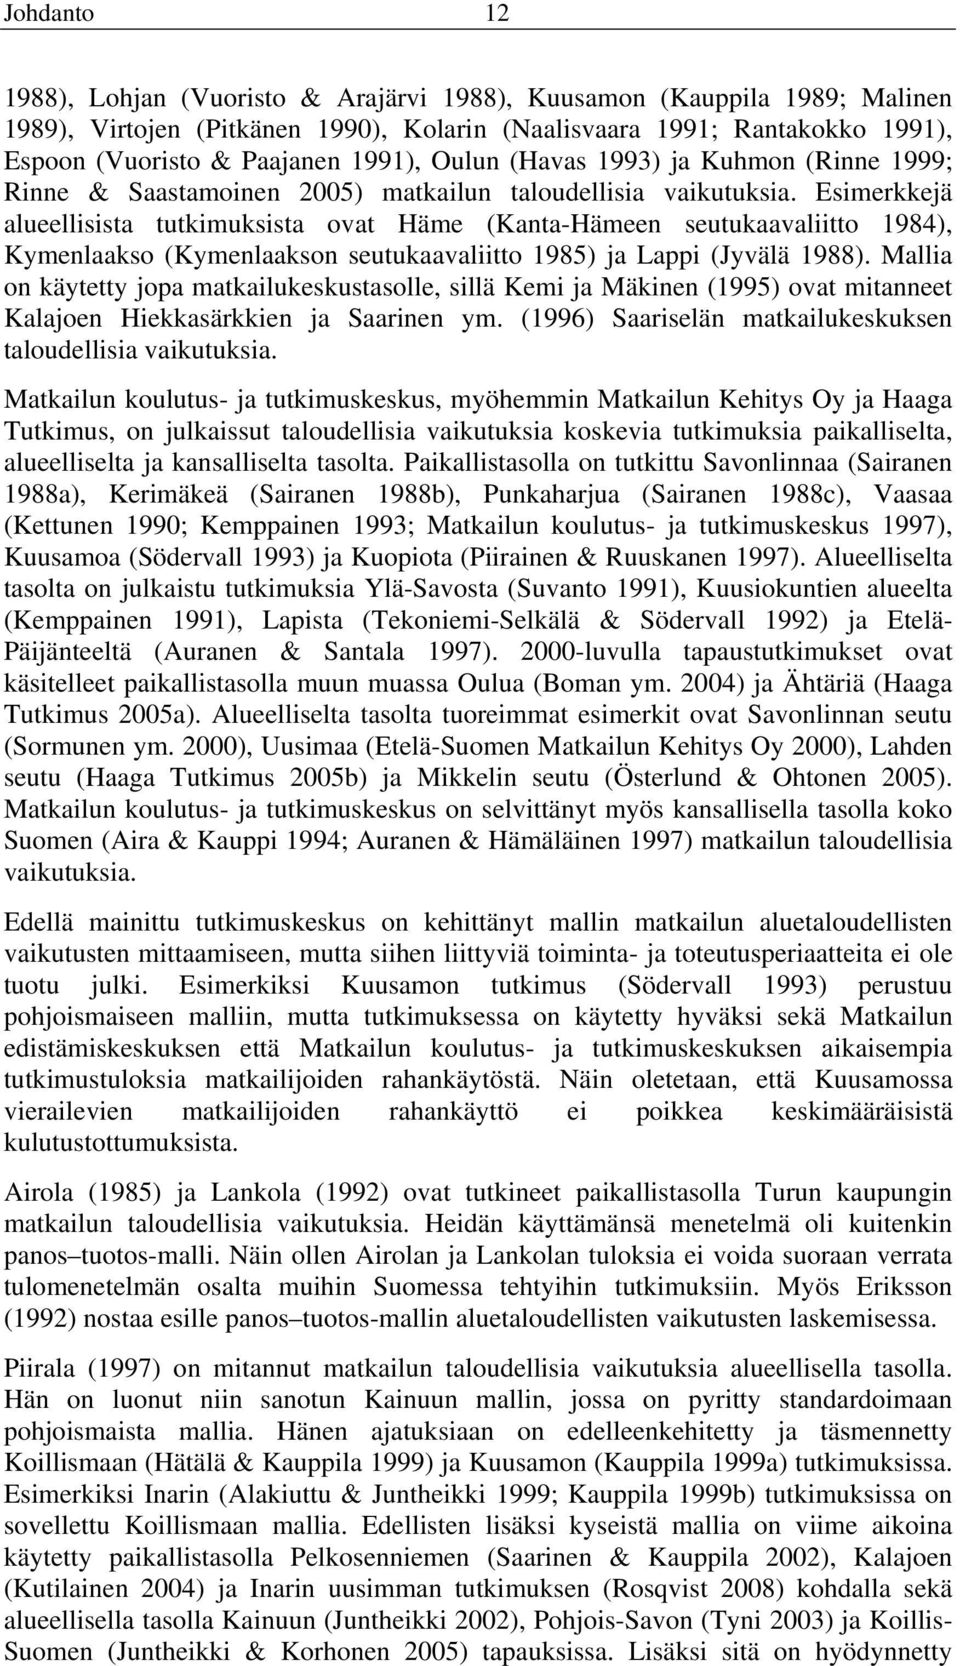 Esimerkkejä alueellisista tutkimuksista ovat Häme (Kanta-Hämeen seutukaavaliitto 1984), Kymenlaakso (Kymenlaakson seutukaavaliitto 1985) ja Lappi (Jyvälä 1988).